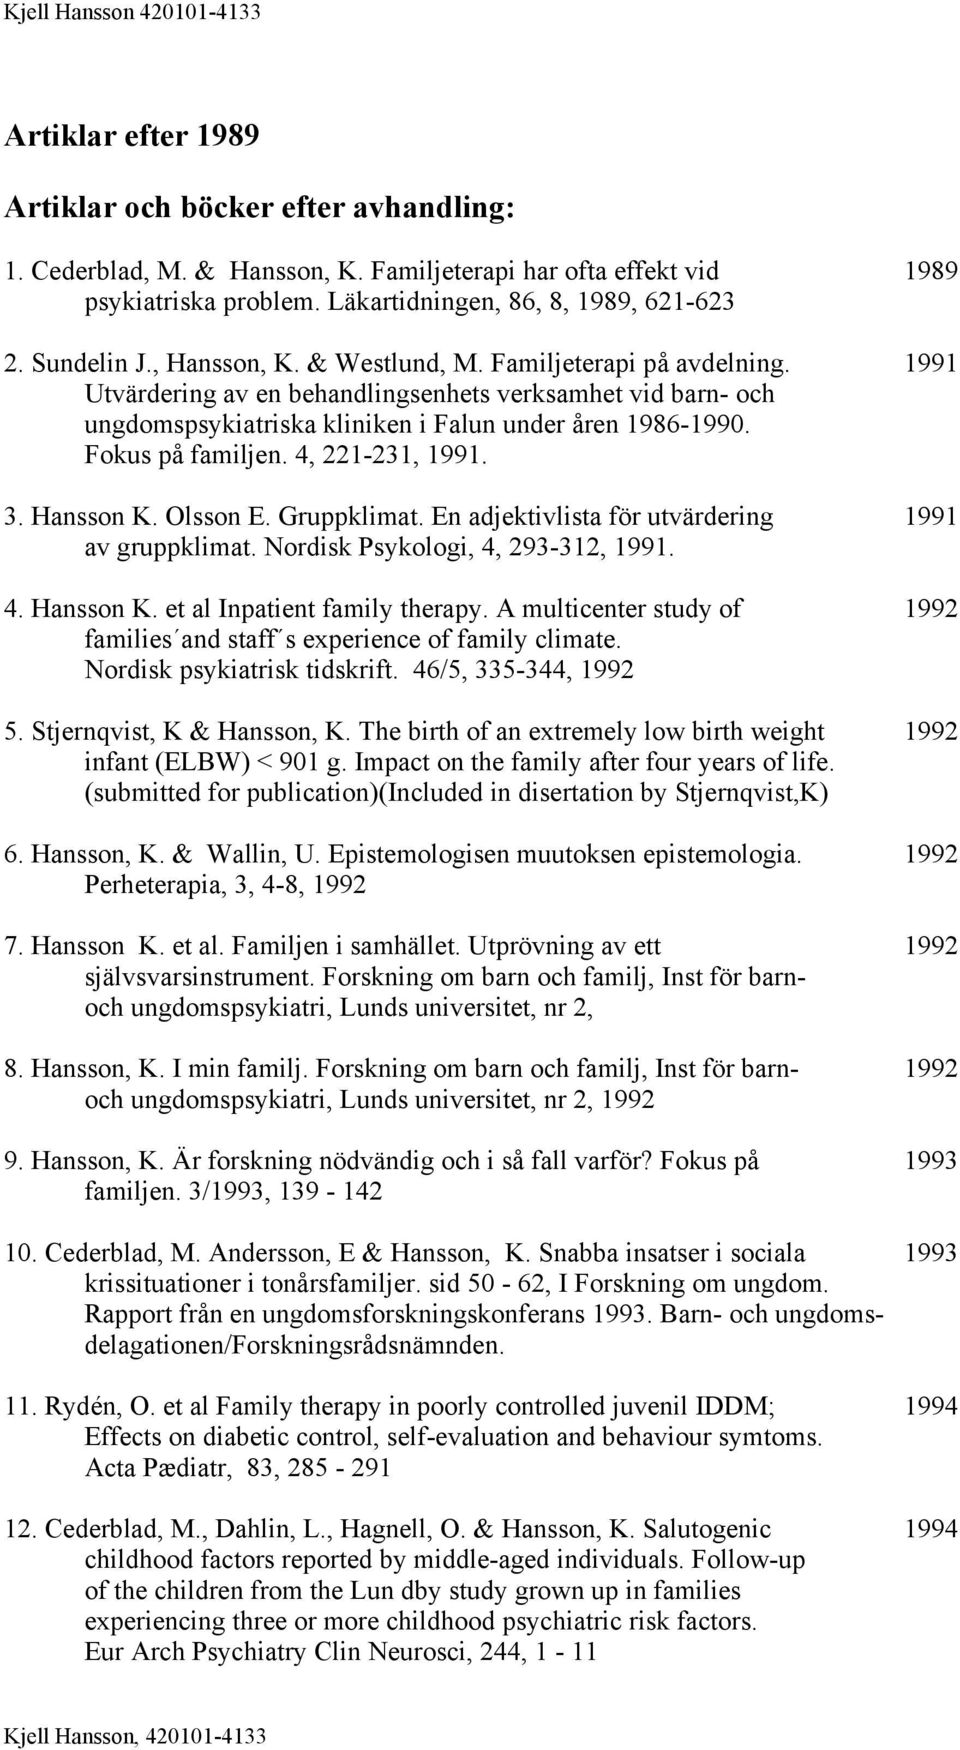 Fokus på familjen. 4, 221-231, 1991. 3. Hansson K. Olsson E. Gruppklimat. En adjektivlista för utvärdering 1991 av gruppklimat. Nordisk Psykologi, 4, 293-312, 1991. 4. Hansson K. et al Inpatient family therapy.